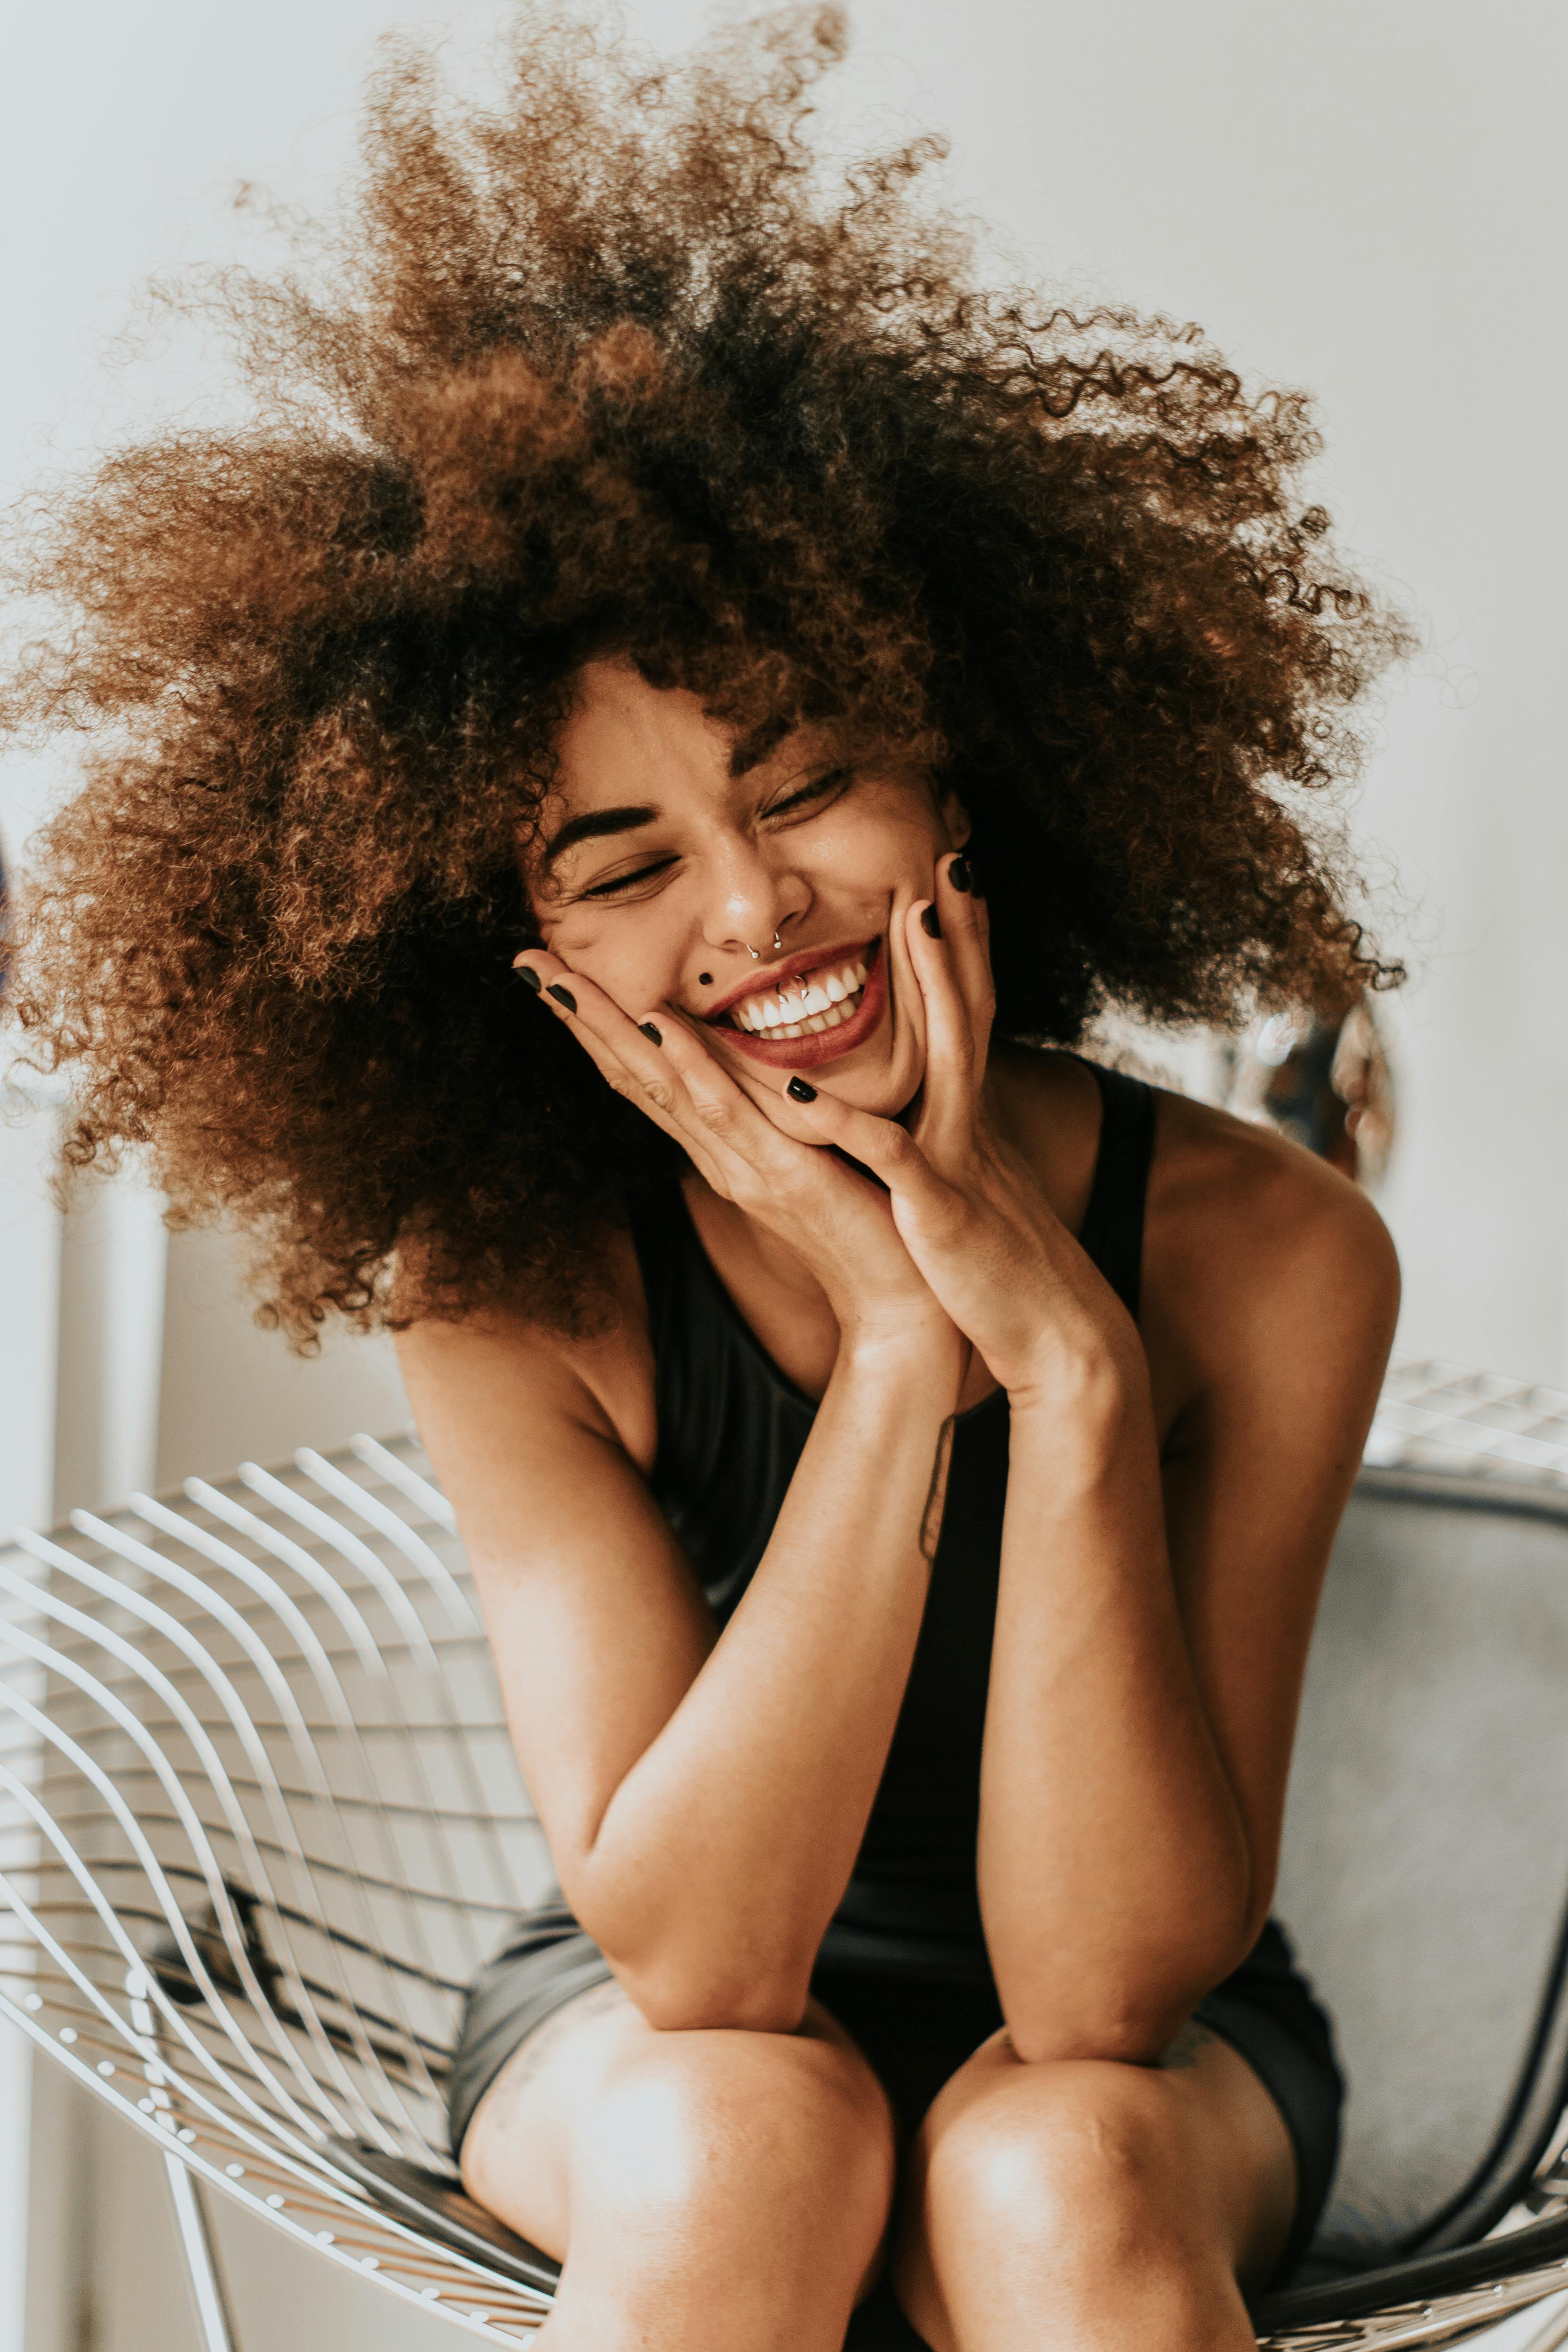 Une femme excitée et souriante qui tient son visage | Source : Pexels